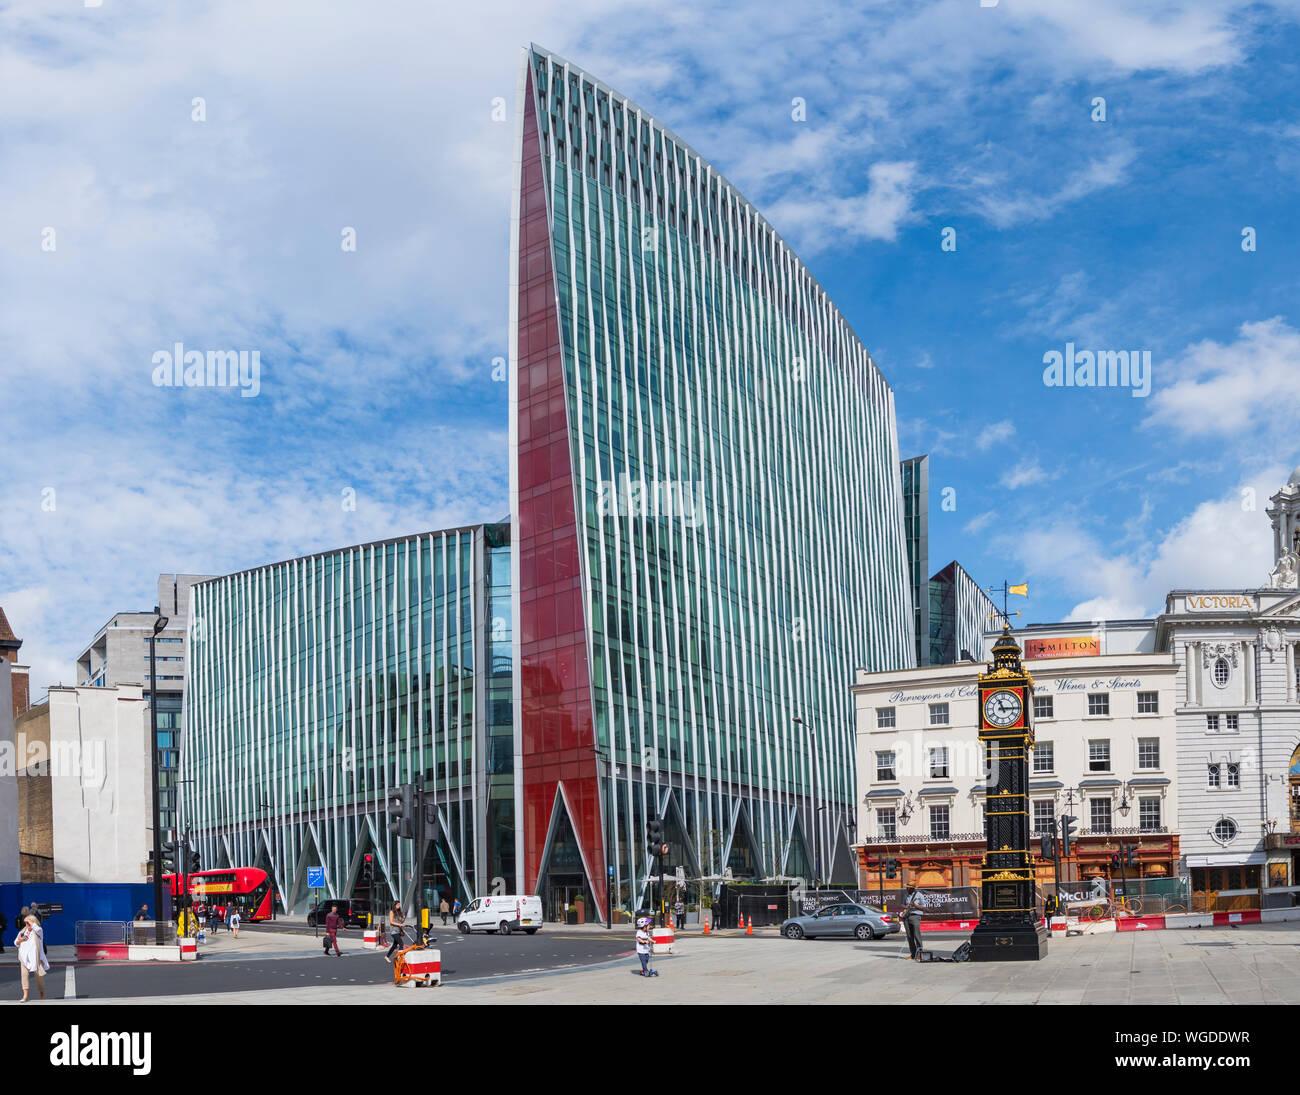 Nova Victoria, eine zeitgenössische Architektur städtische moderne Bürogebäude Gebäude in Victoria, Westminster, London, England, UK. Stockfoto